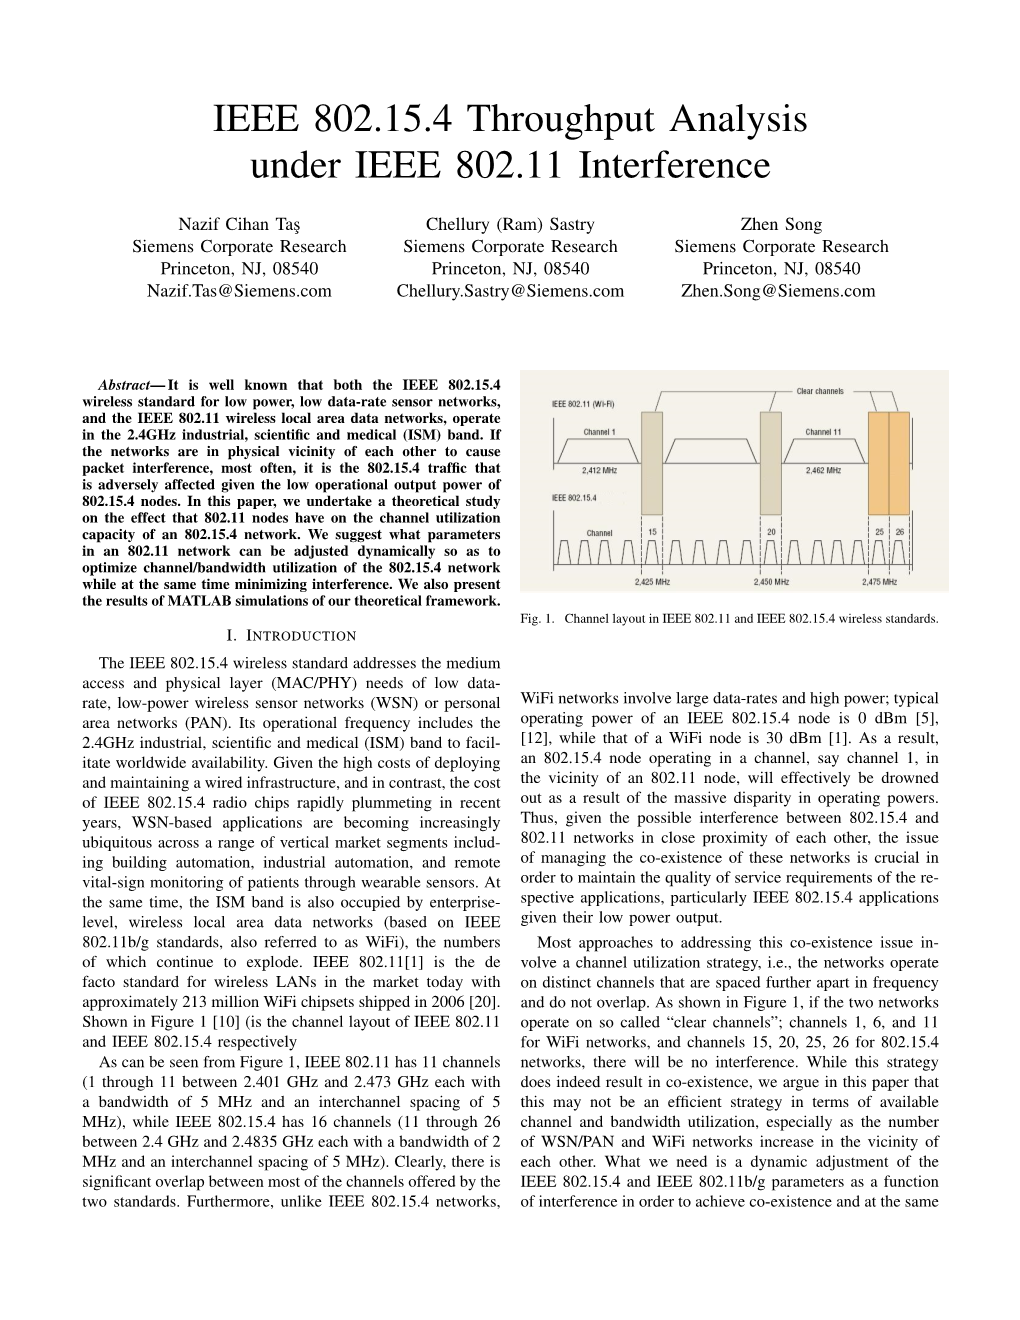 IEEE 802.15.4 Throughput Analysis Under IEEE 802.11 Interference